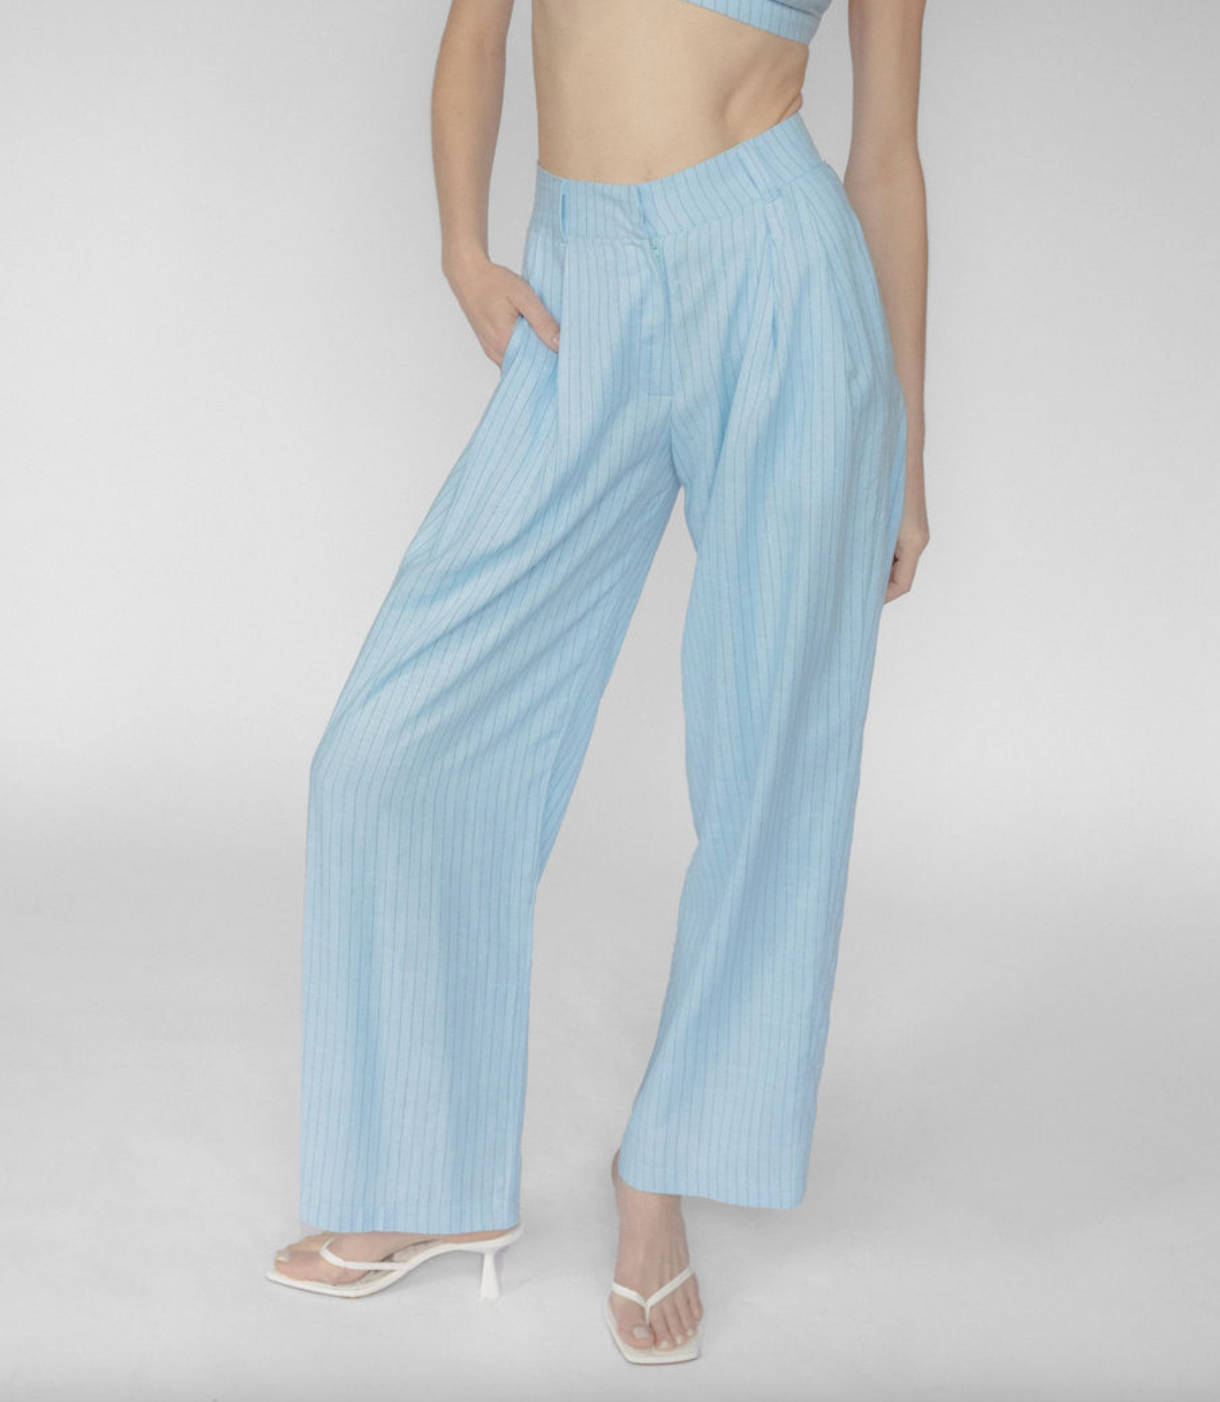 Susan Blue Linen Pants